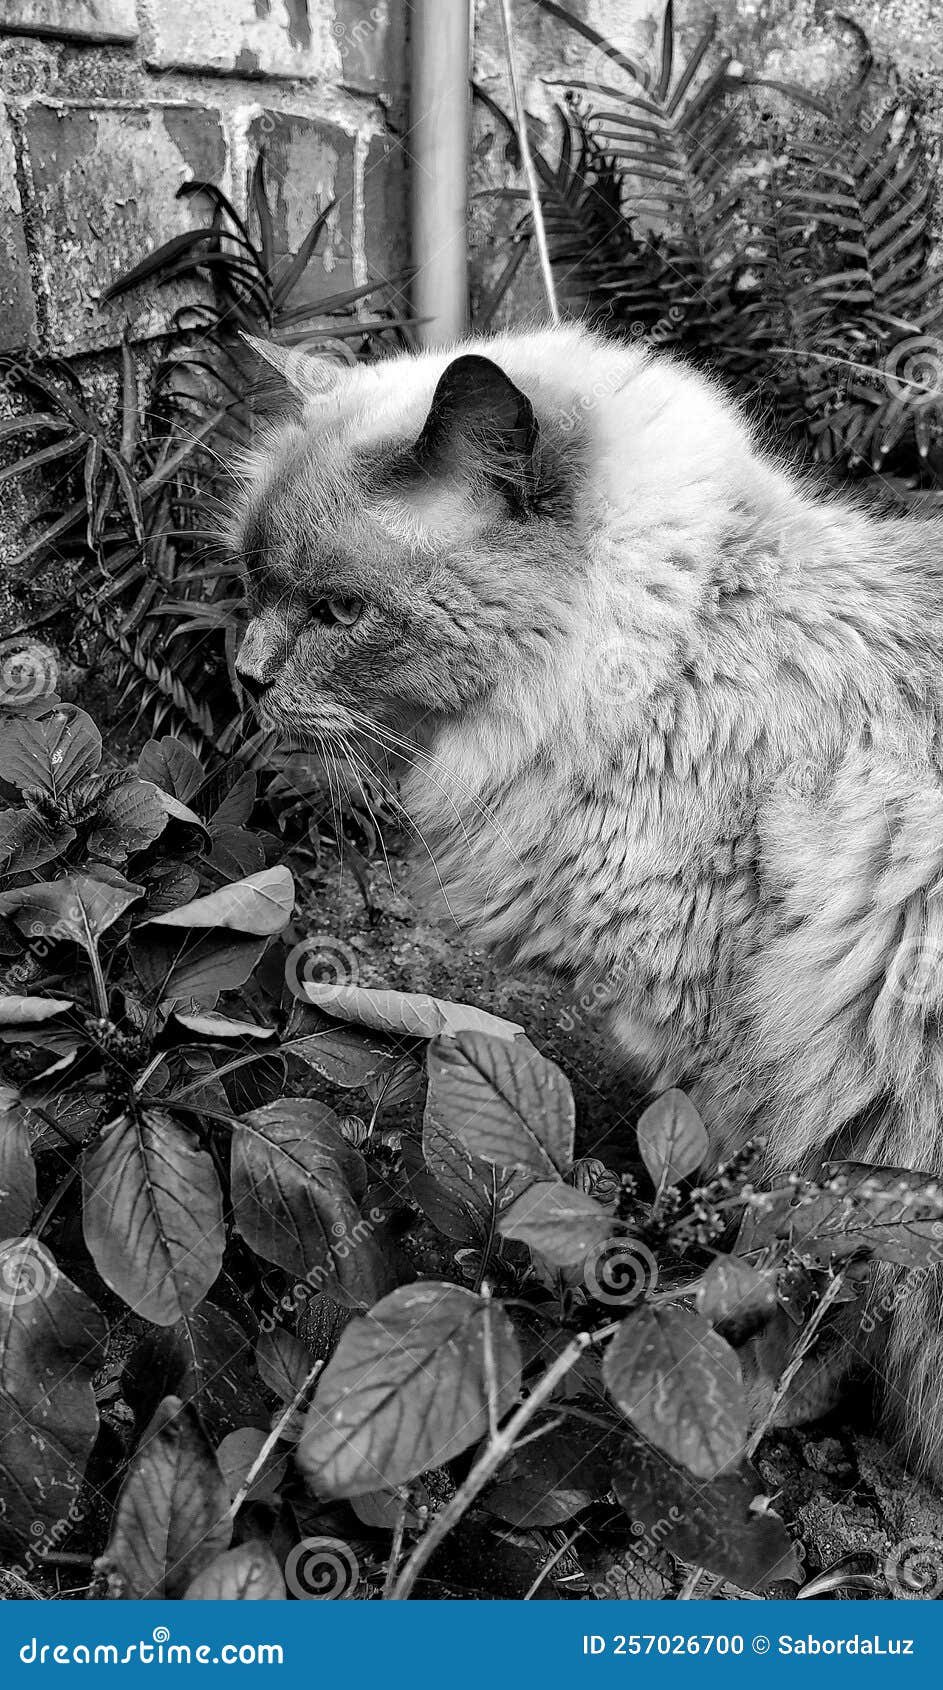 a beautiful cat among the foliage.